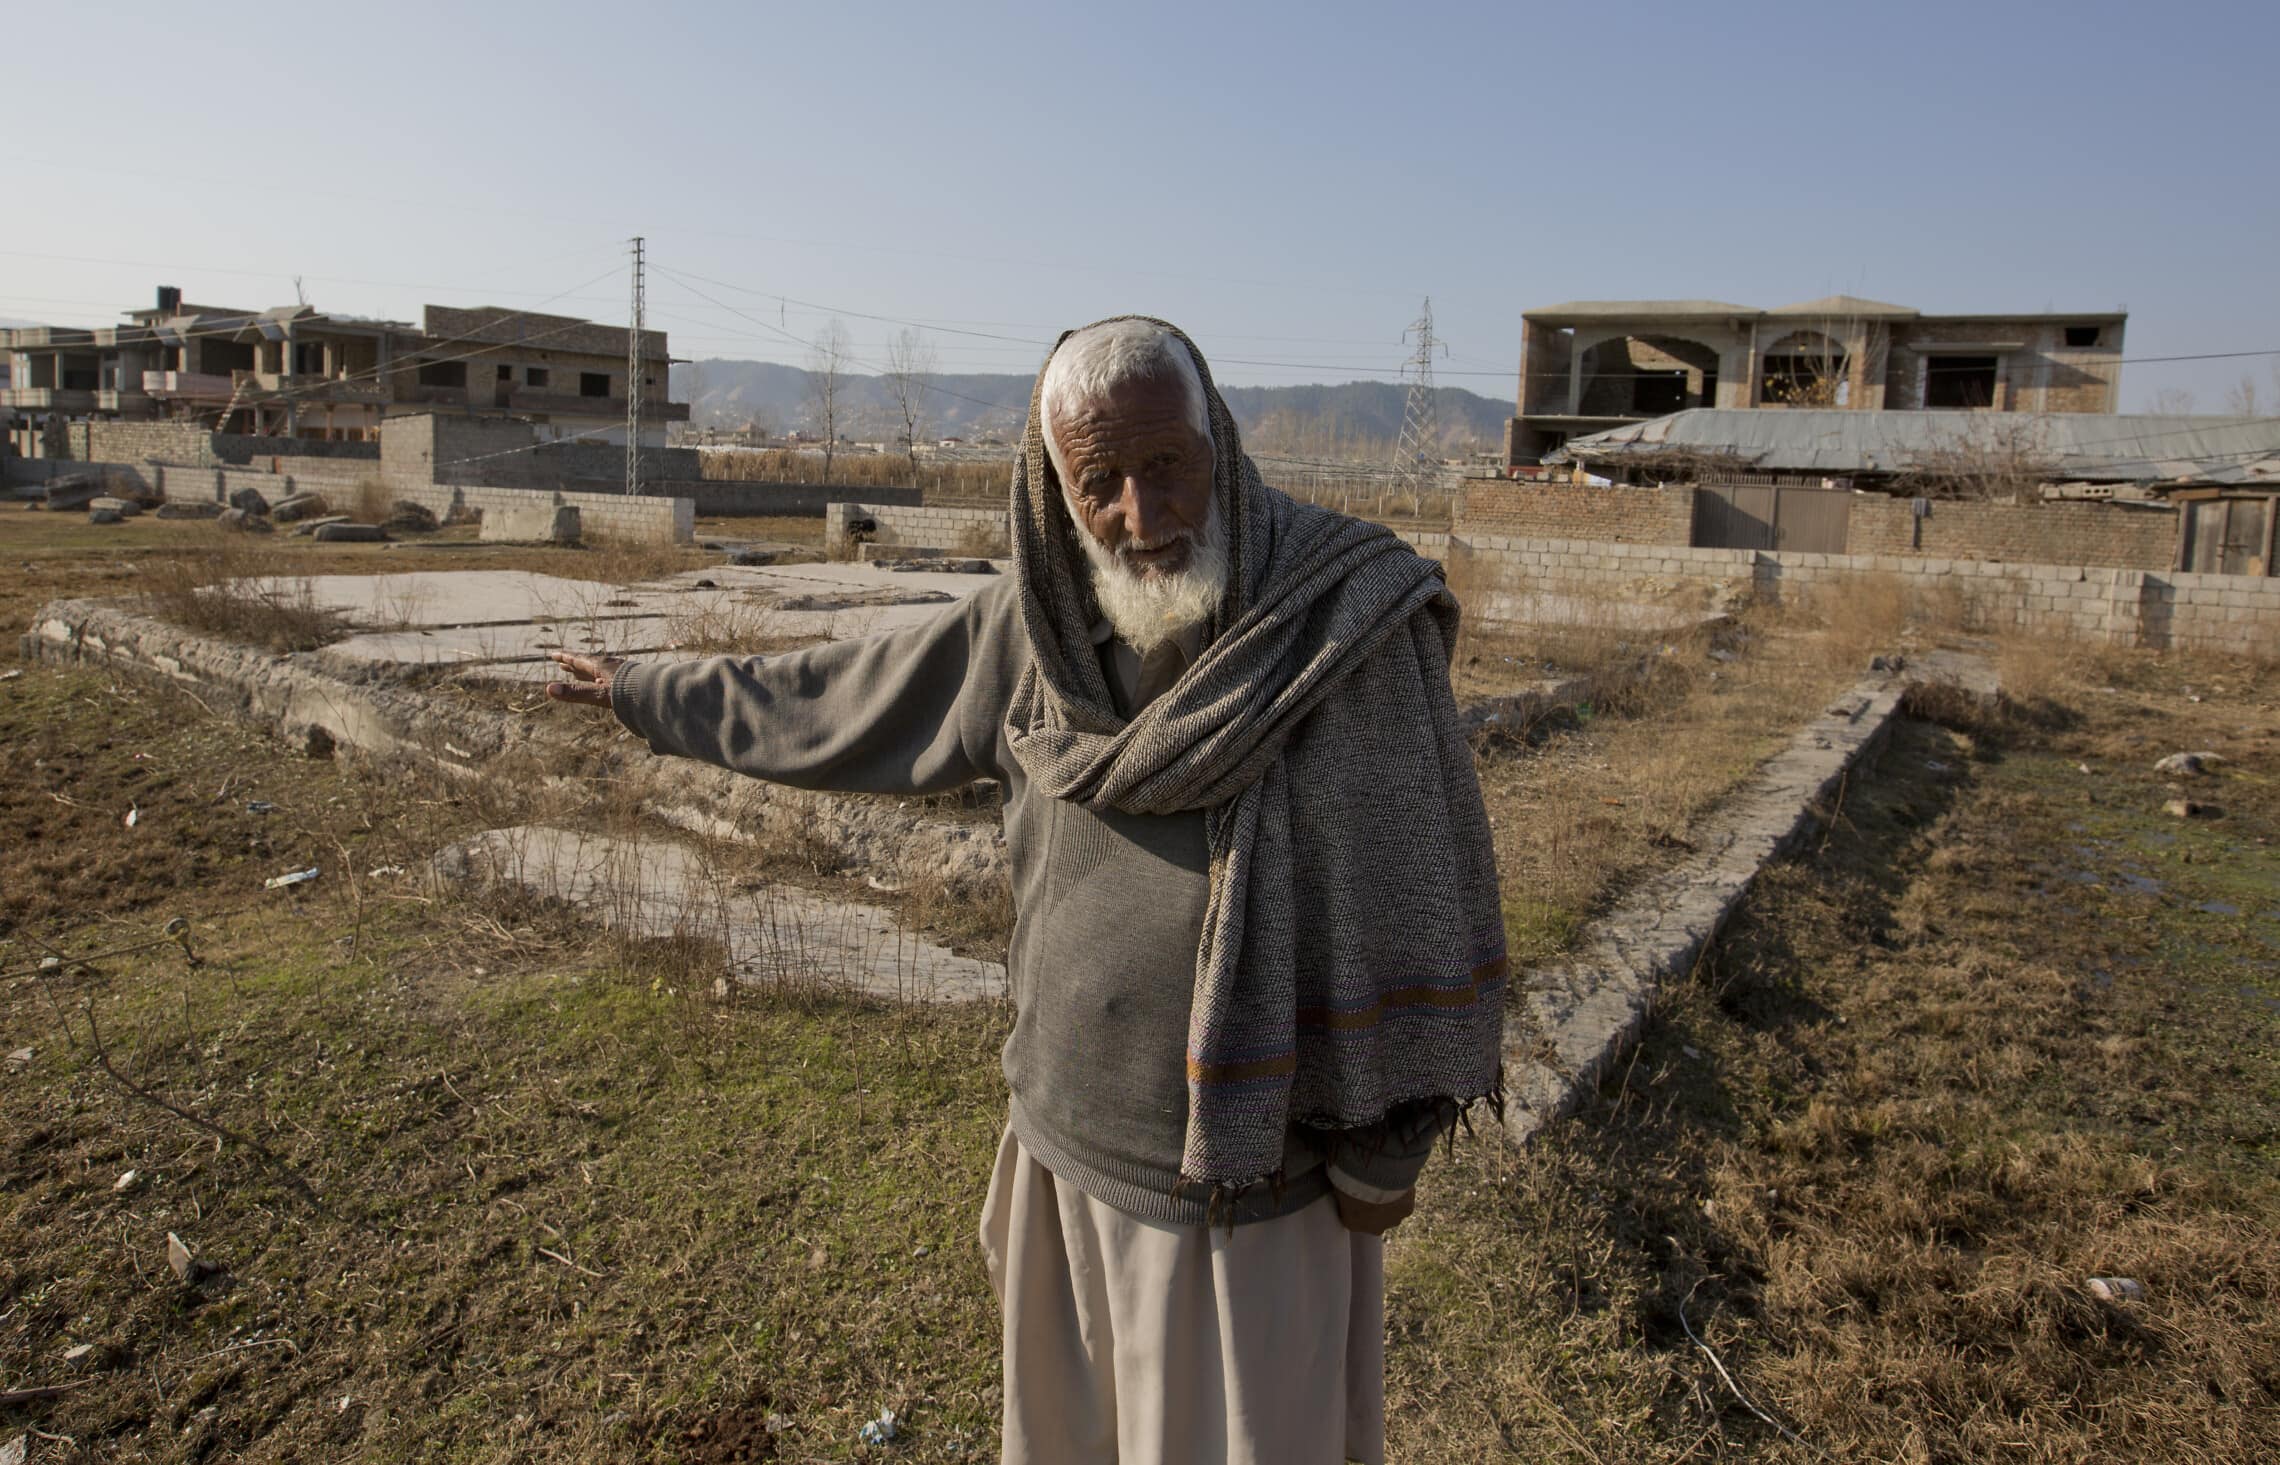 זאין מוחמד, שומר לשעבר שעבד עבור אוסמה בן לאדן, מצביע על שאריות ביתו של בן לאדן באבוטאבאד, ינואר 2018 (צילום: AP Photo/B.K. Bangash)